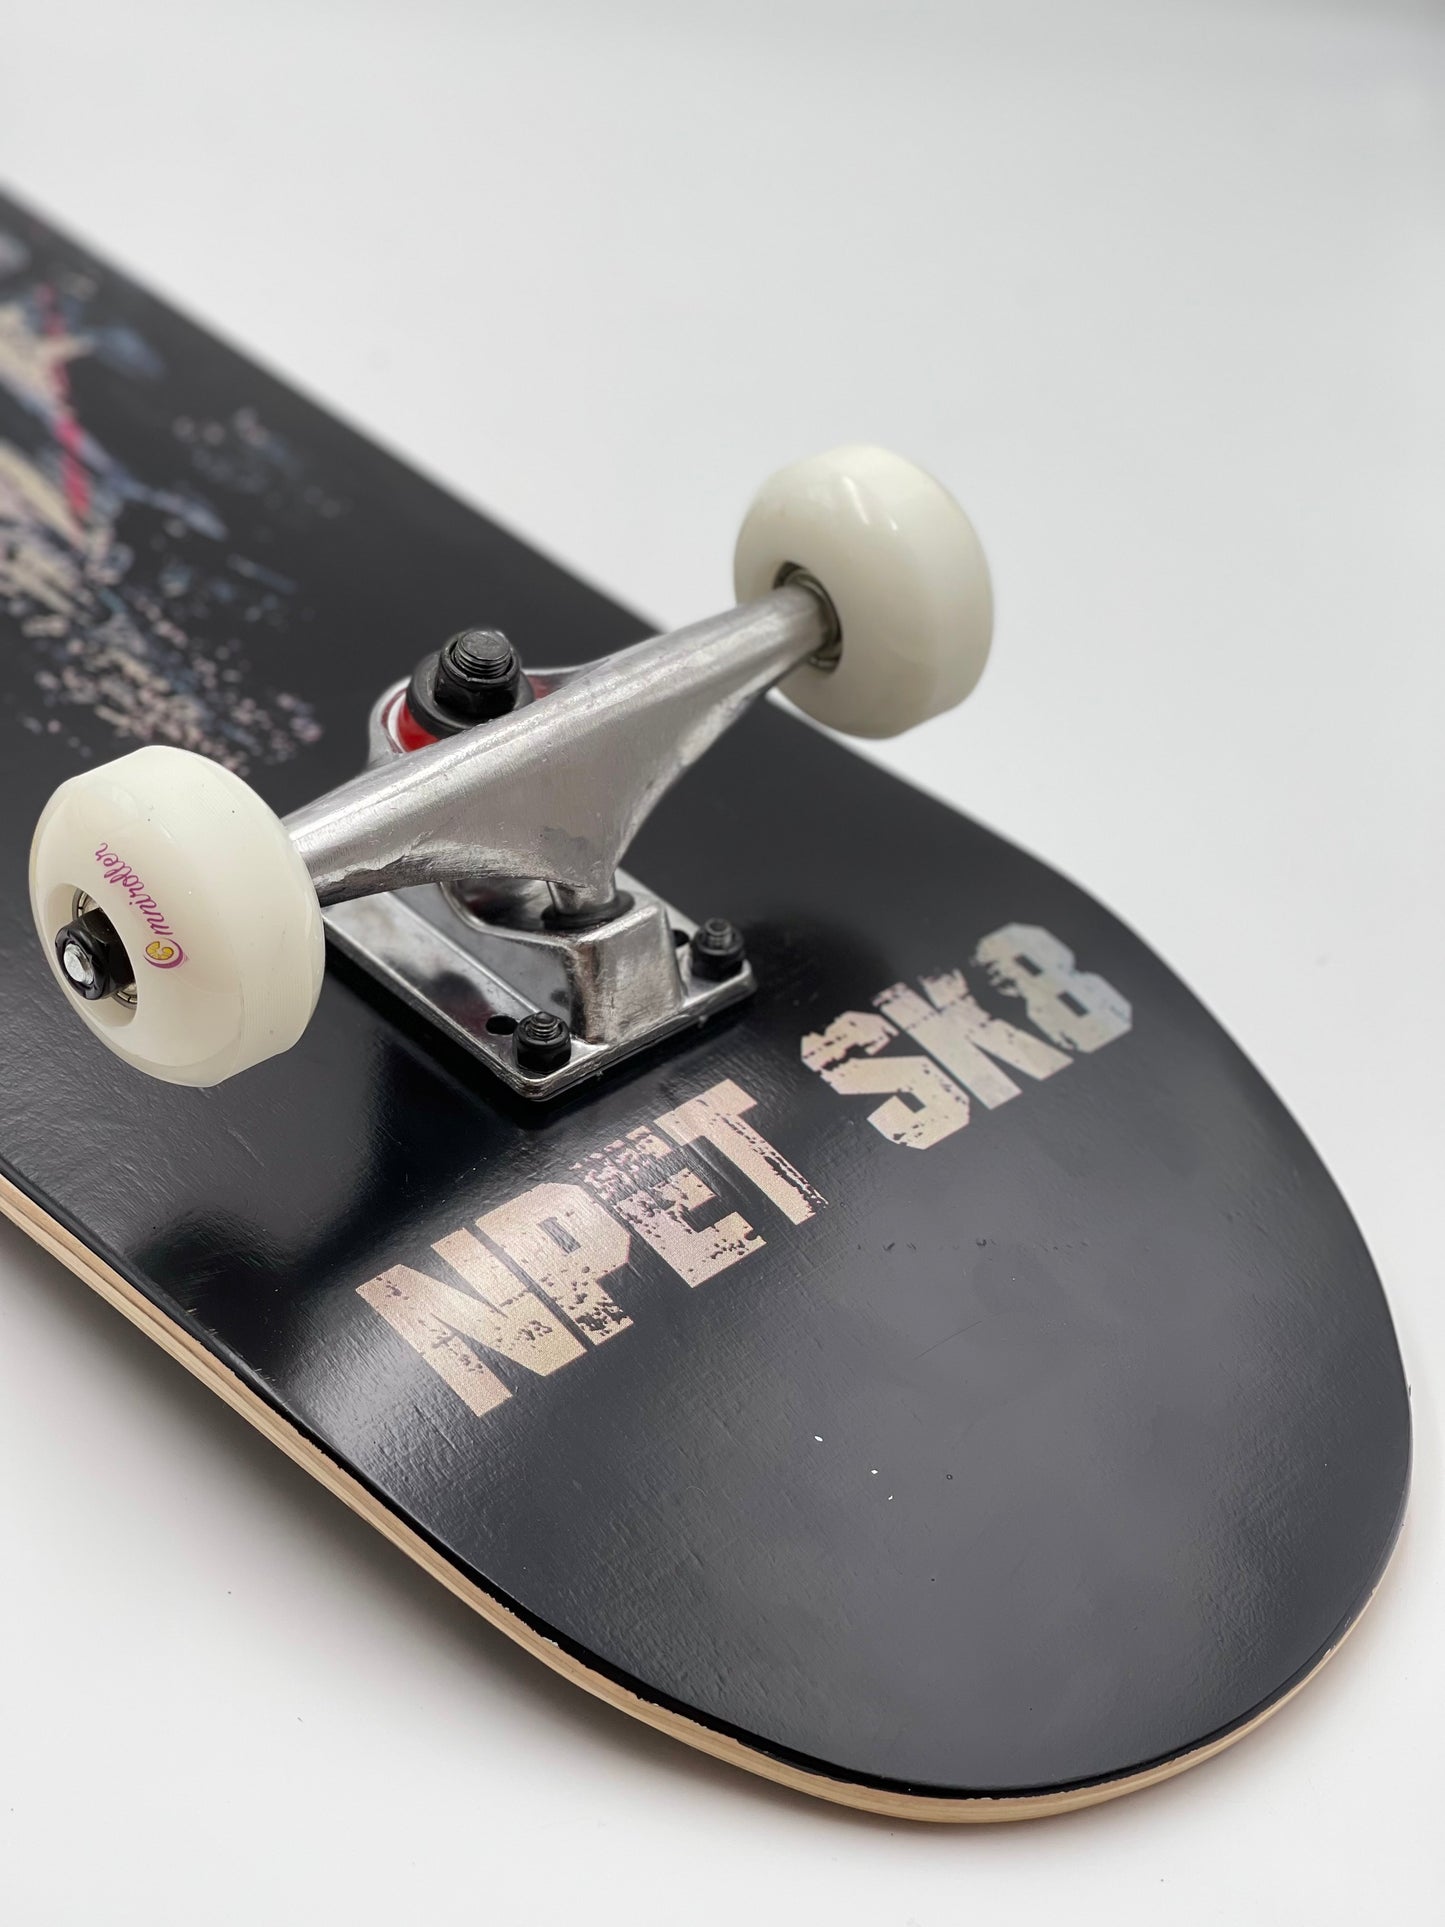 Omni NPET SK8 Skateboard